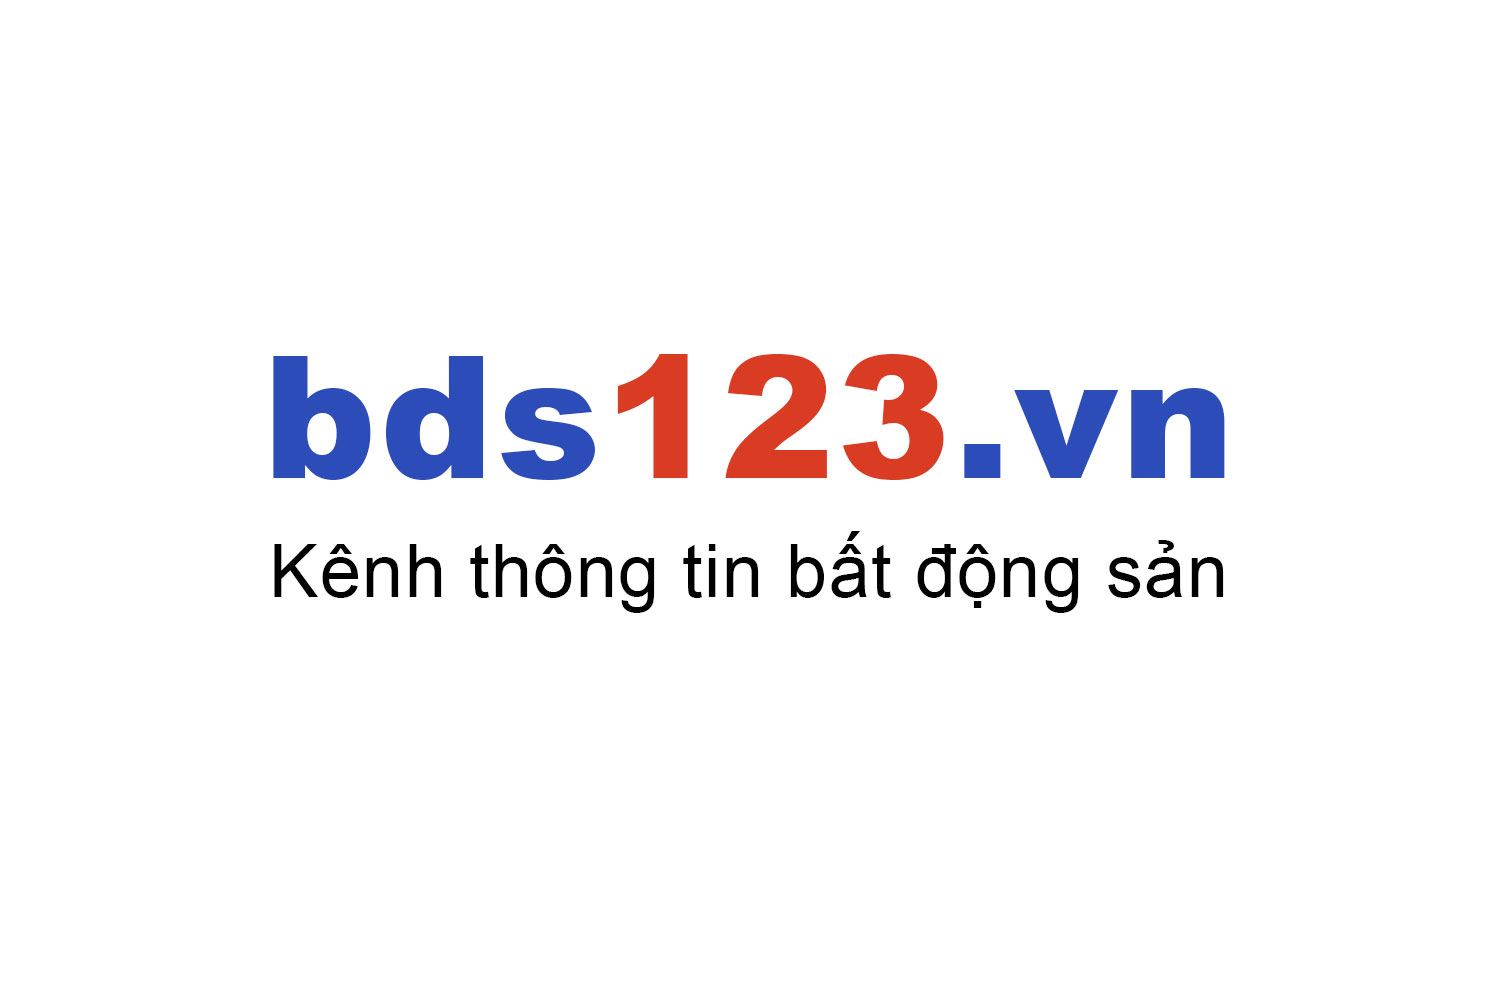 Mua bán chung cư Hà Nội Homeland ưu đãi giá tốt T10/2022 - Bds123.vn